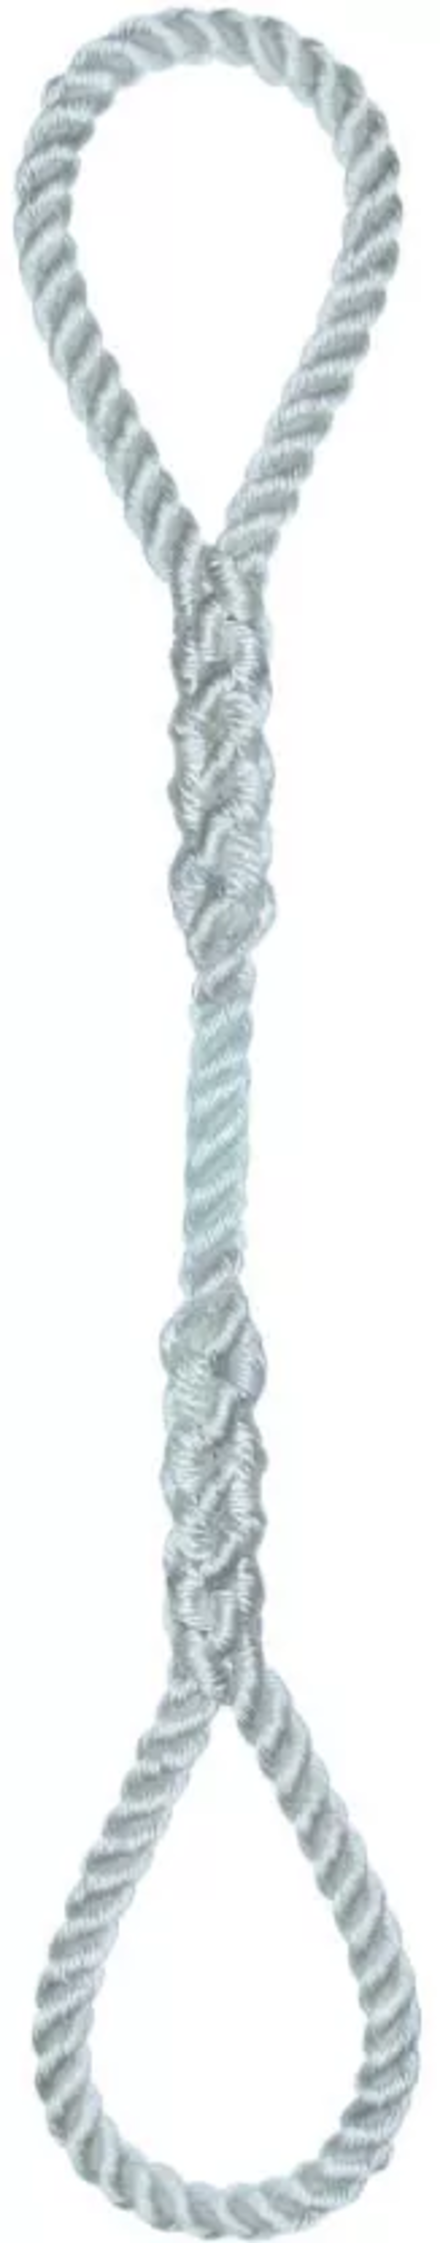 Élingue corde d.8 mm cmu 100 kg 2 grandes boucles long 1 m LEVAC - 4404E